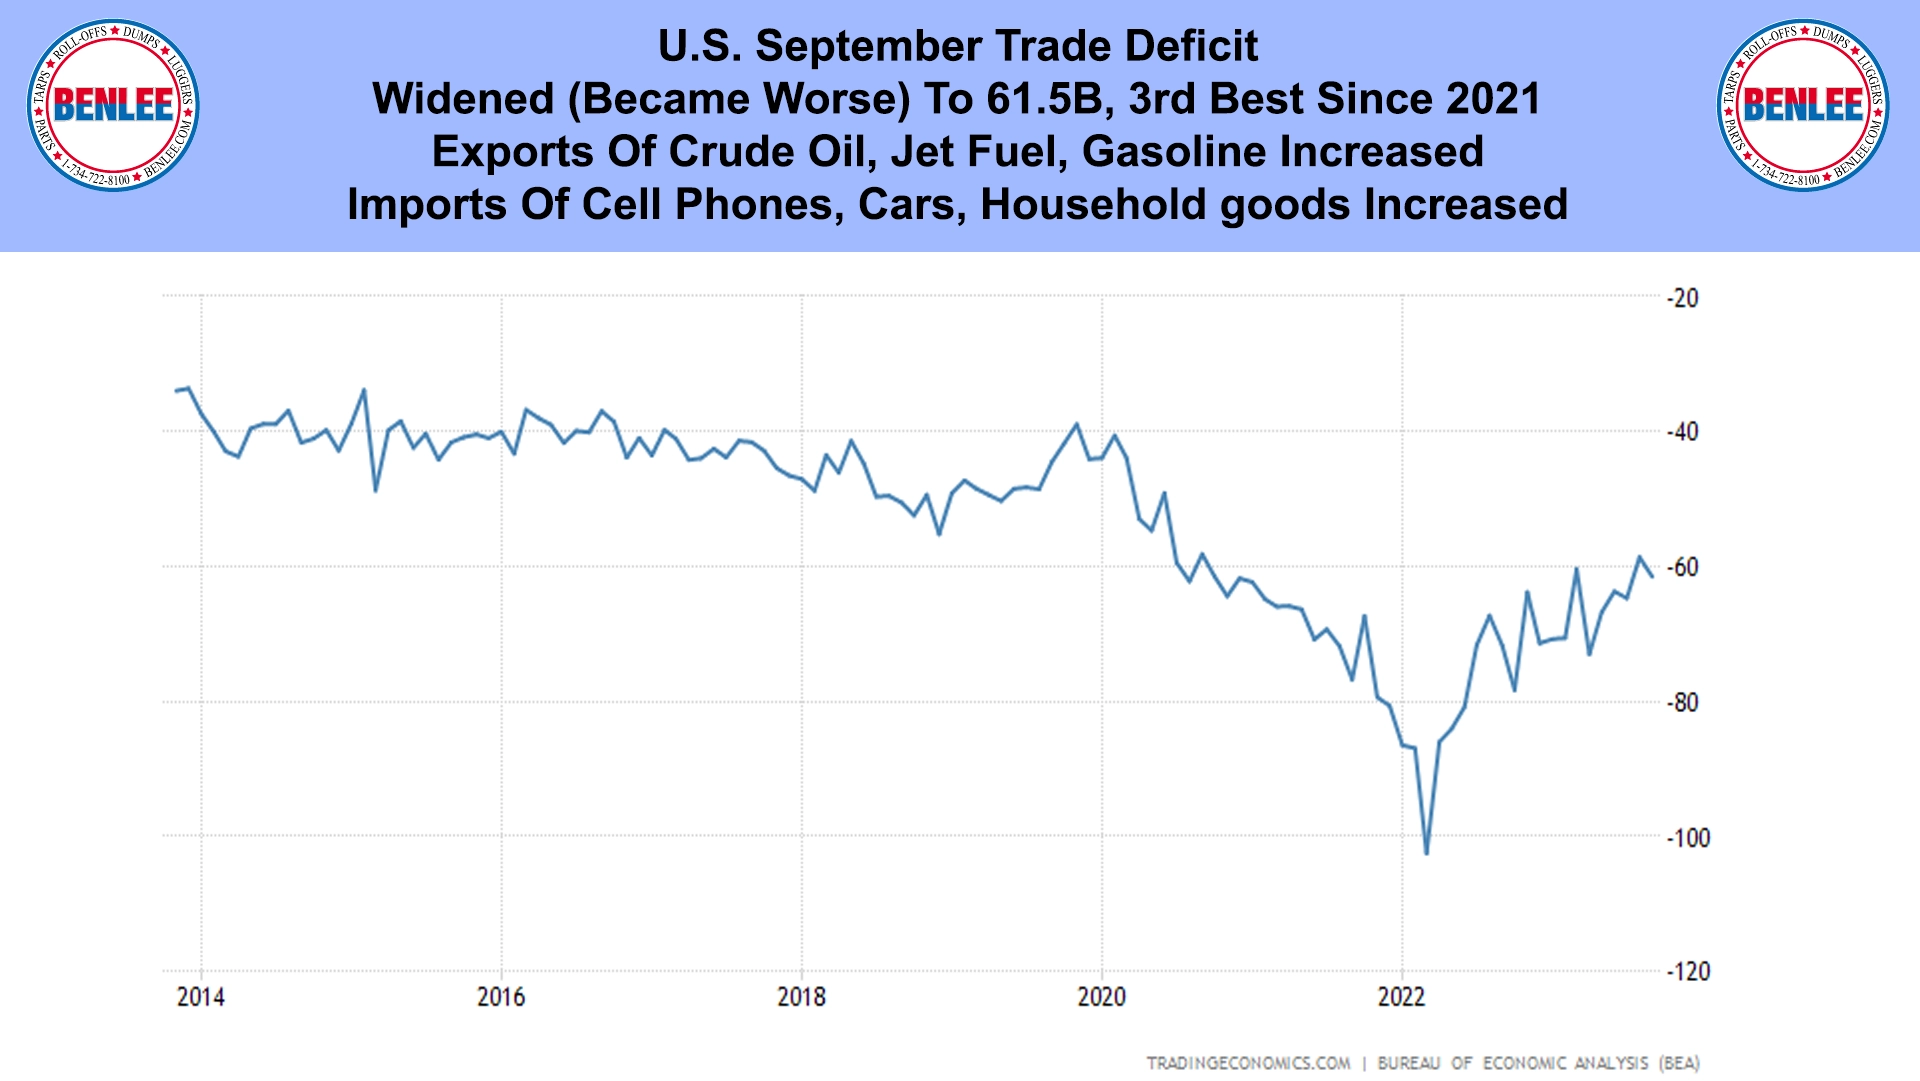 U.S. September Trade Deficit